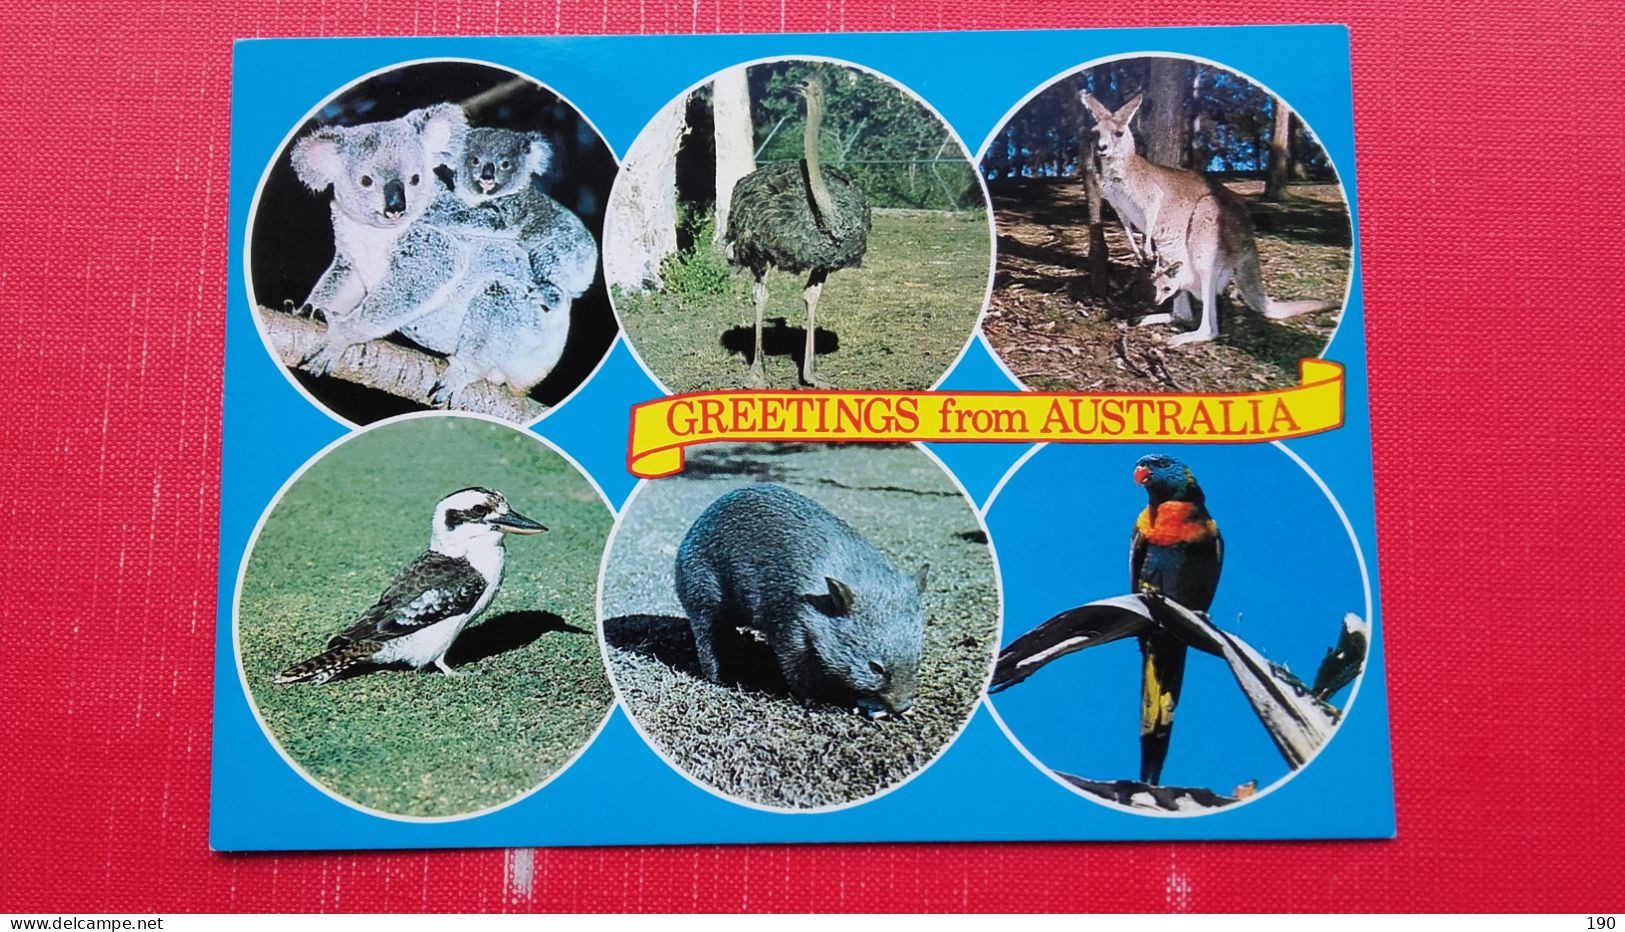 Koala And Baby,Emu,Kangaroo With Joey,Kookaburra,Wombat,Rainbow Lorikeet - Outback